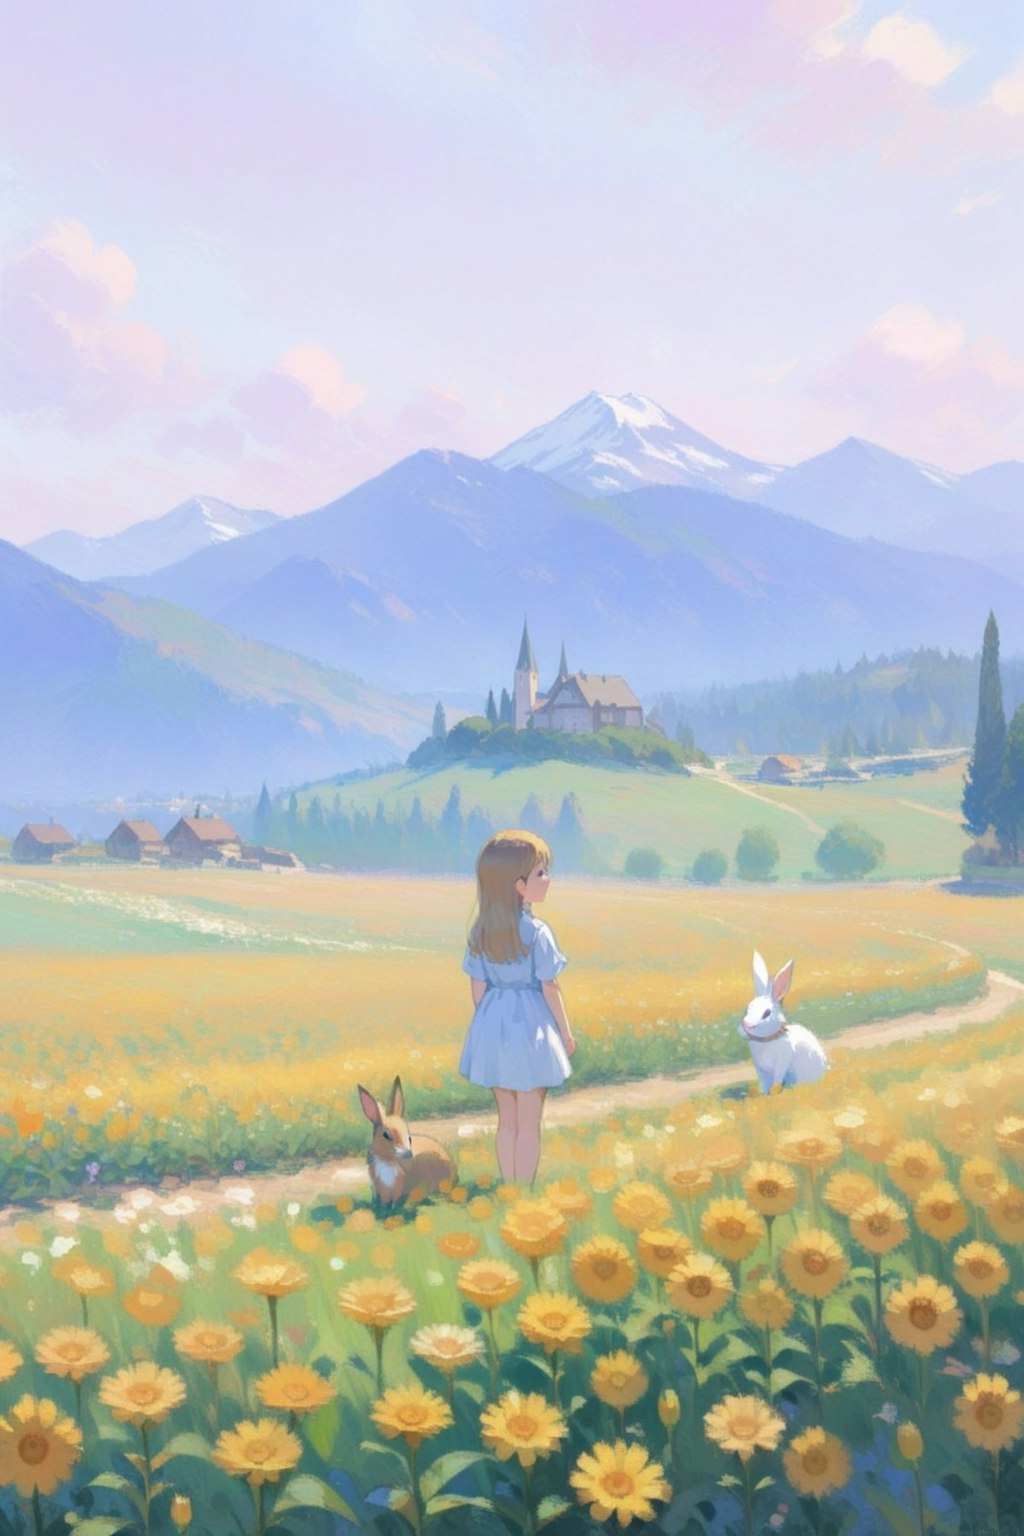 ウサギと少女